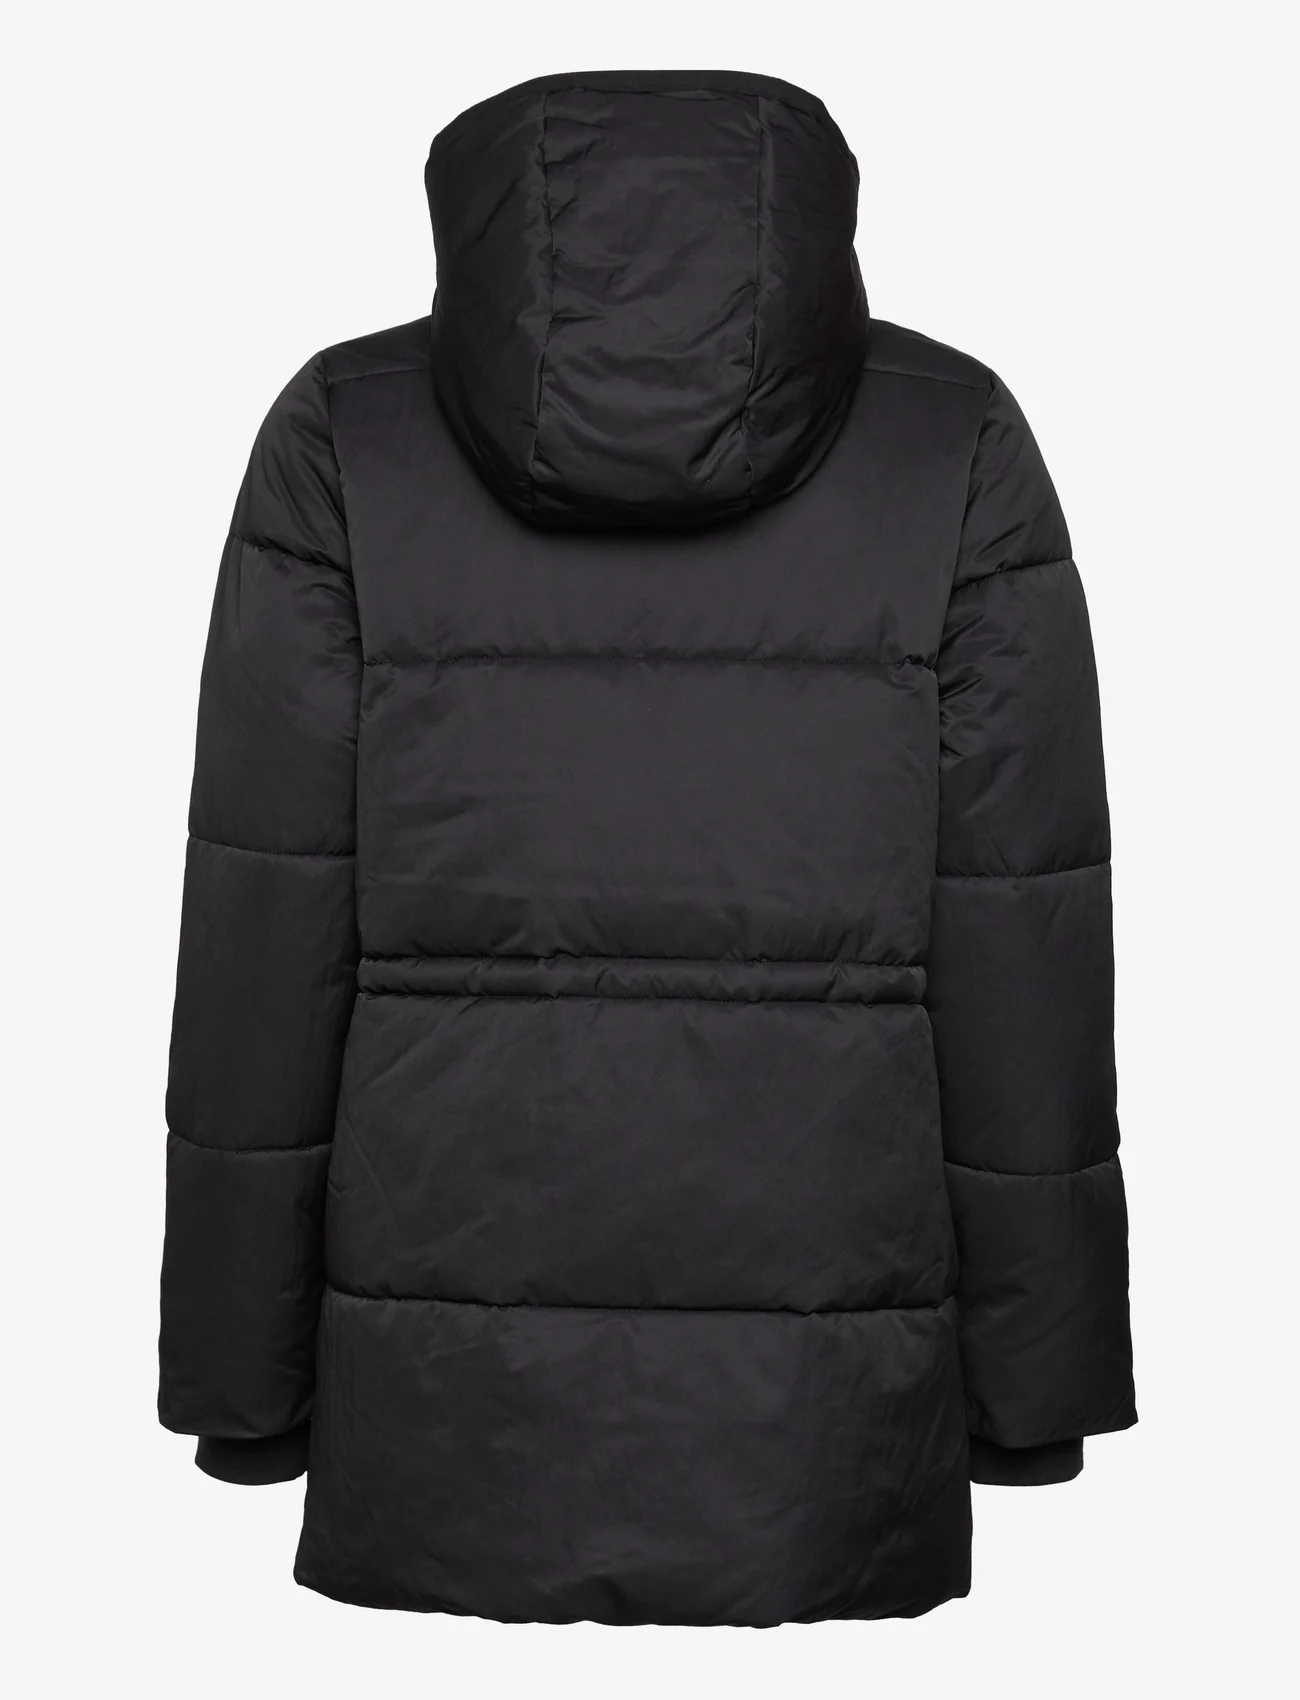 Noa Noa - Heavy outerwear - winterjacken - black - 1